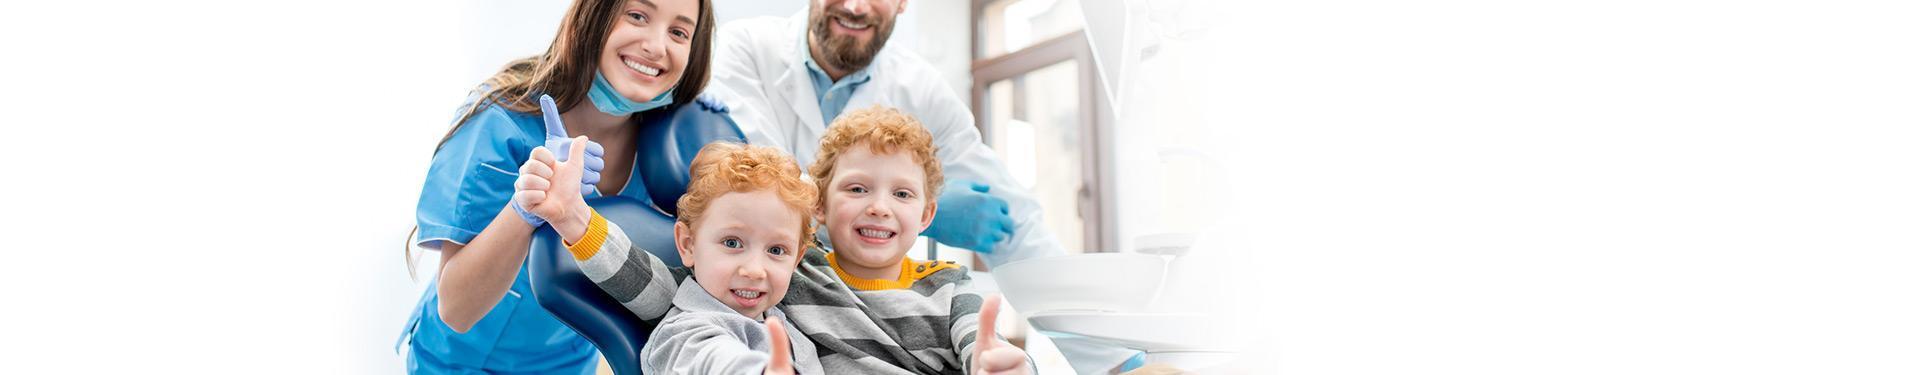 dziećmi zadowolone z wizyty u stomatologa